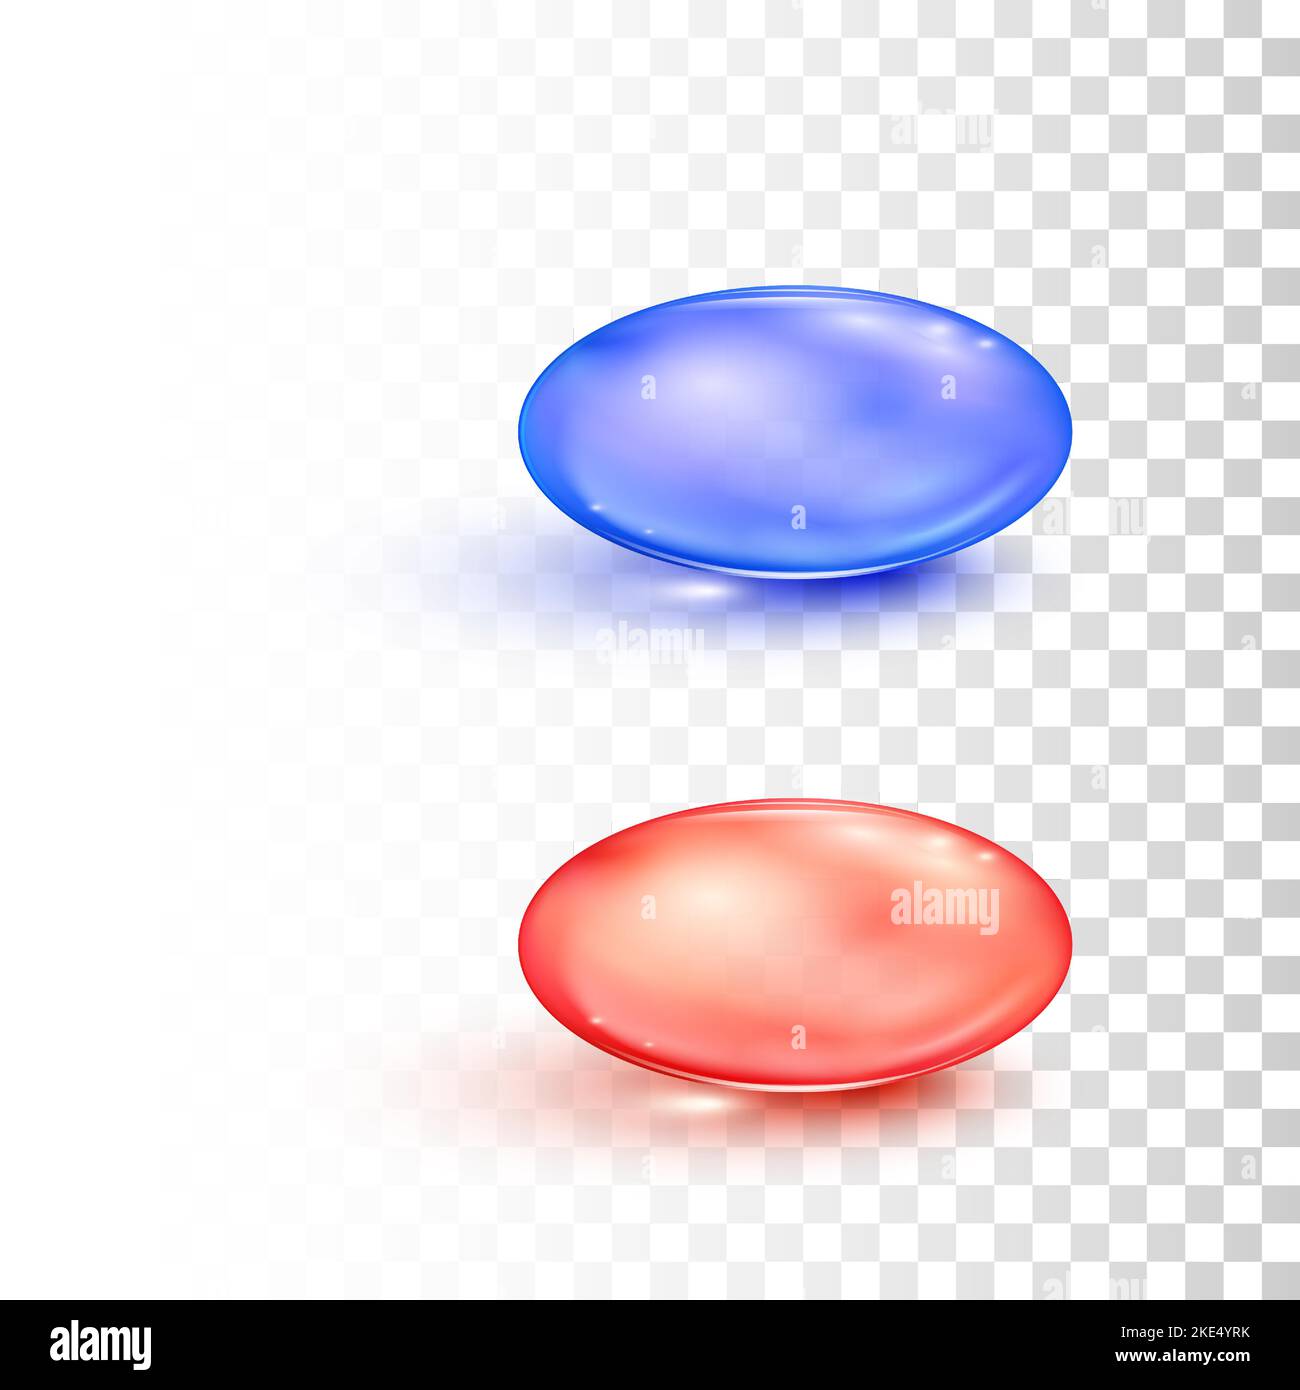 Rote und blaue runde transparente Pillen im Matrix-Stil isoliert auf transparentem Hintergrund. Konzept der Wahl. Kapseln für medizinische Medikamente. Vektorgrafik Stock Vektor